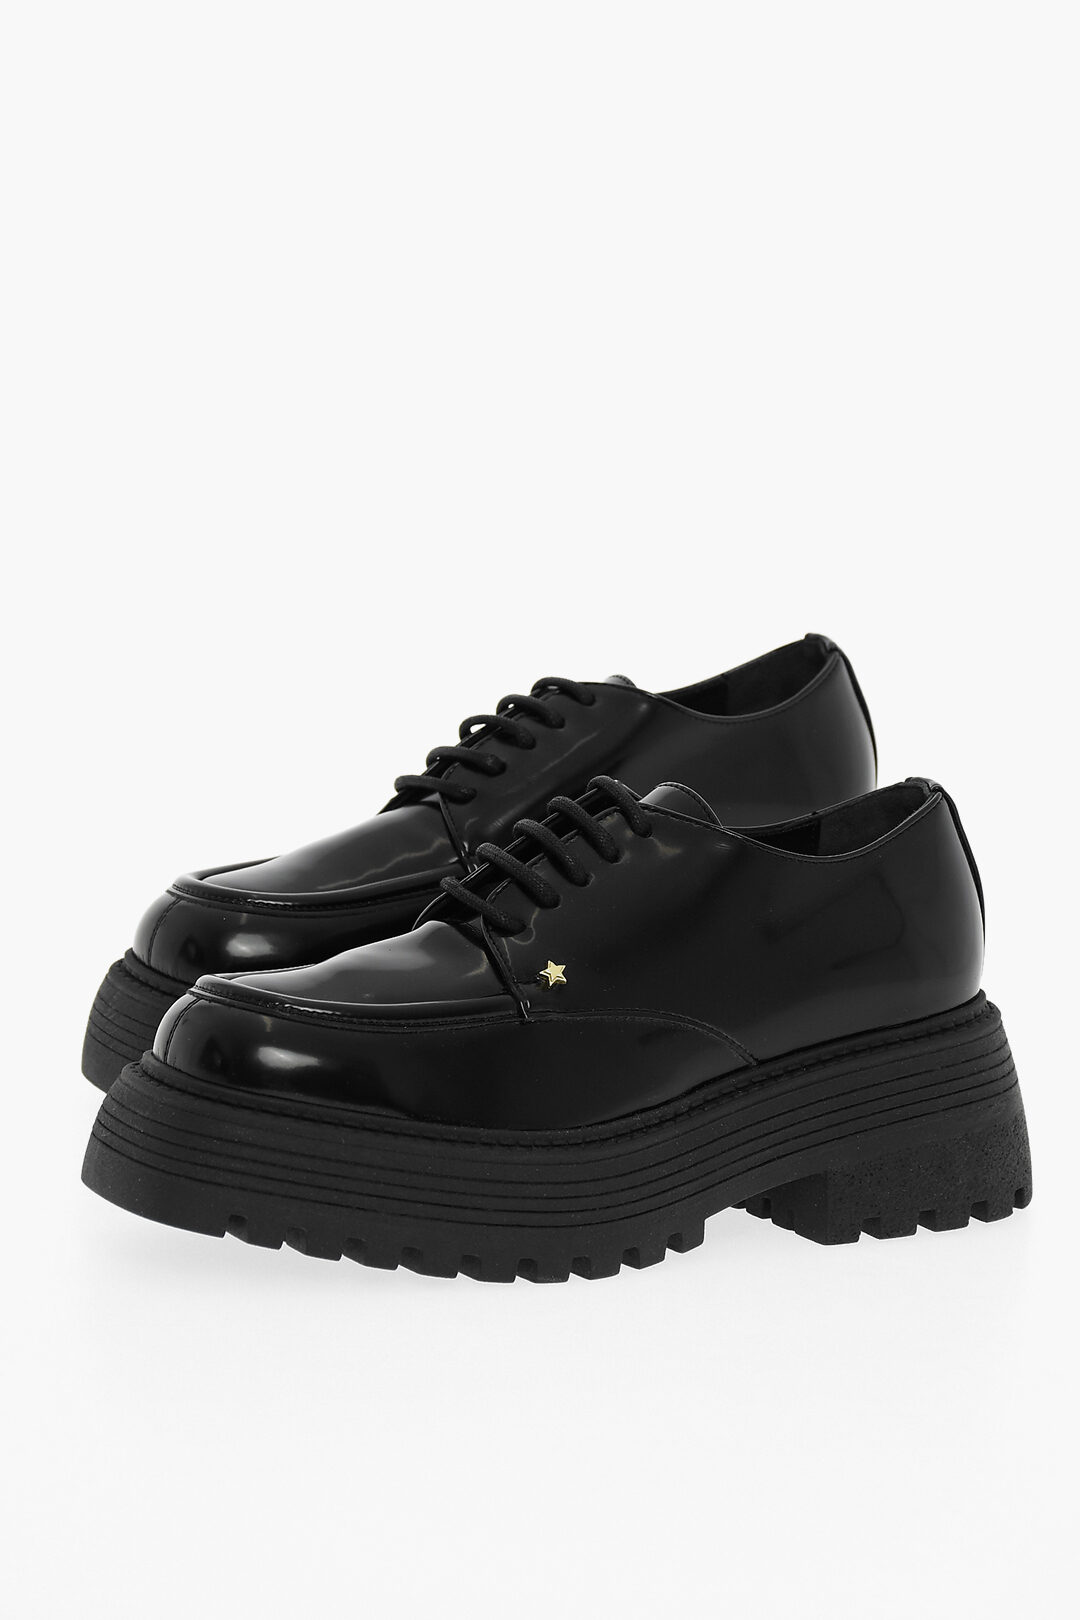 Chiara Ferragni - White and Black Leather Sneakers